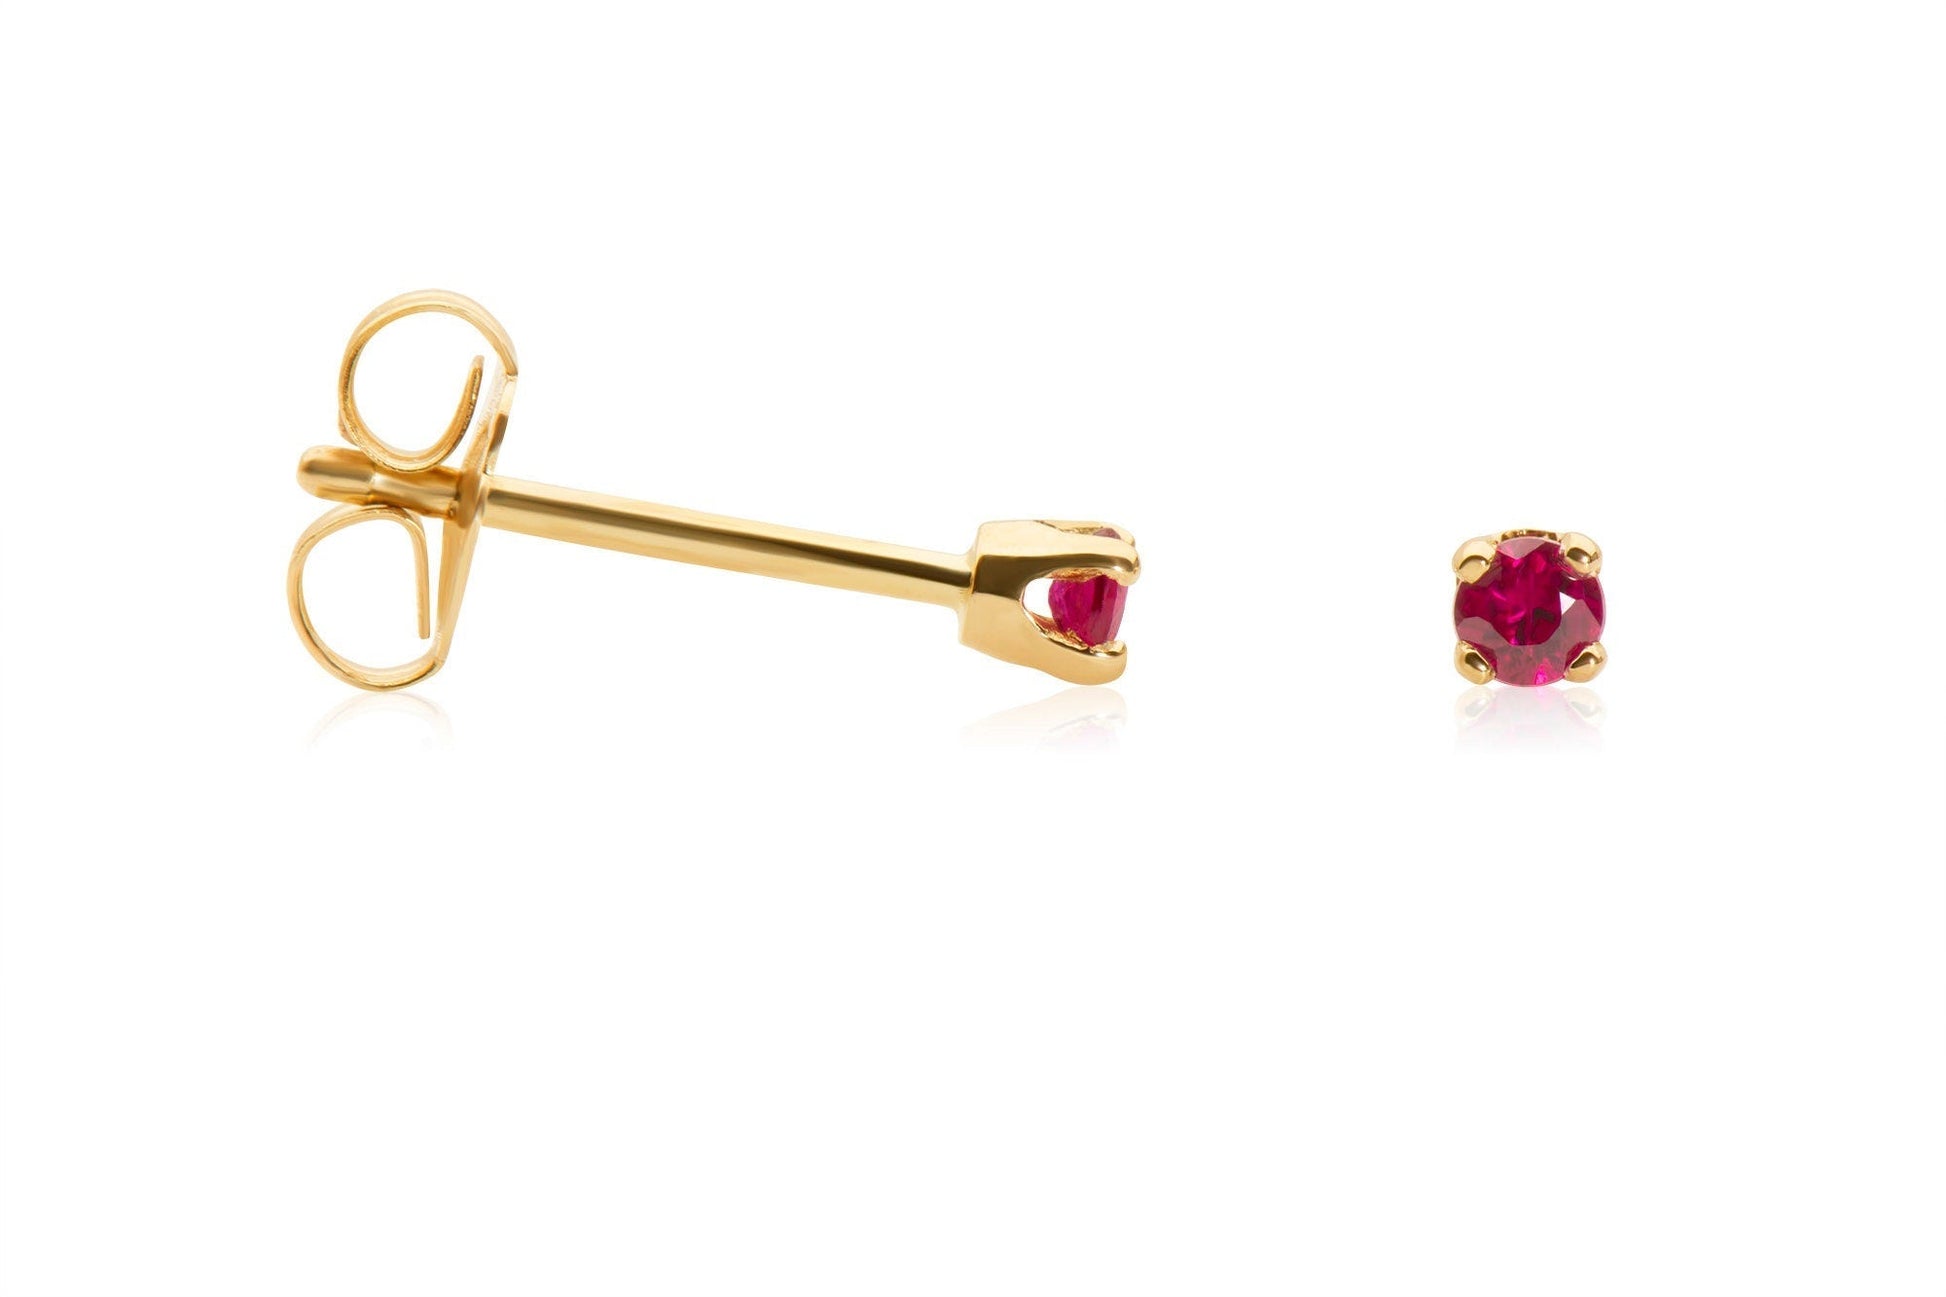 14k Gold Ruby Stud Earrings